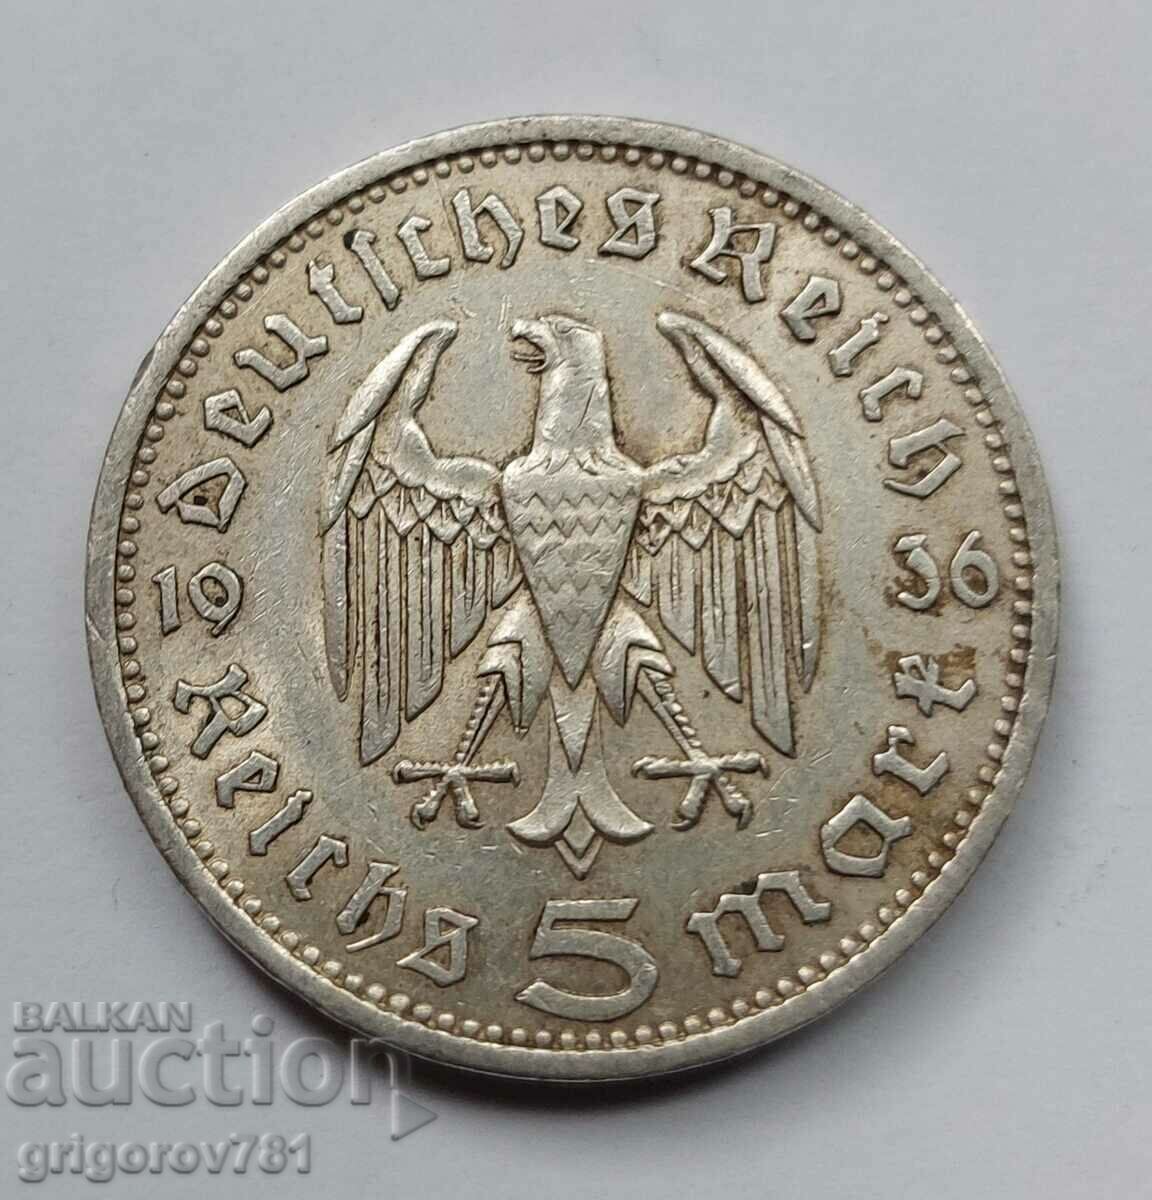 5 Mark Silver Γερμανία 1936 A III Reich Silver Coin #46